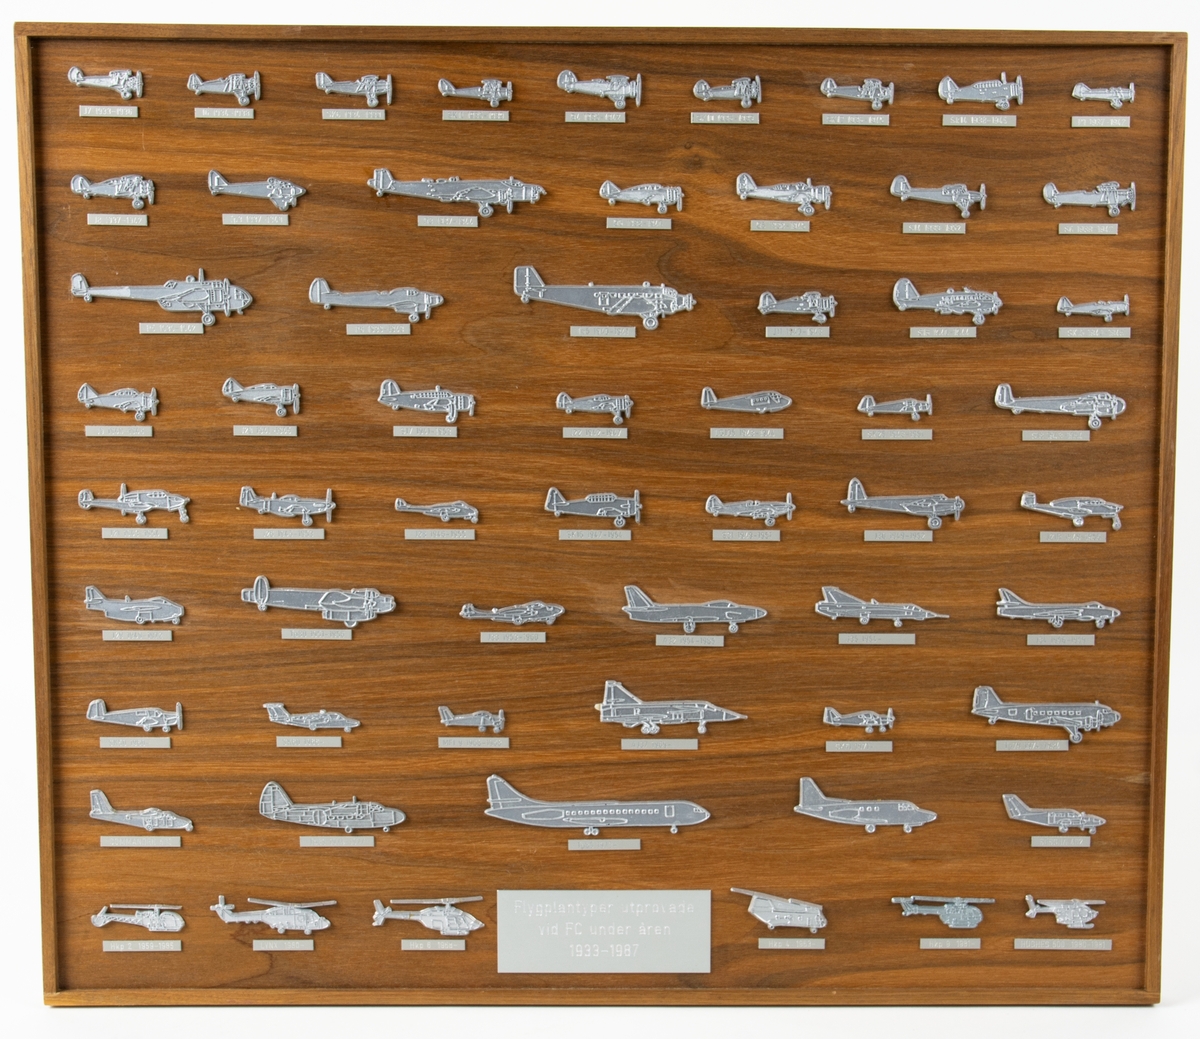 Tavla med flygplanstyper utprovade vid FC under åren 1933-1987. På tavlan av trä är små silverfärgade flyglan av gjuten plast limmade.